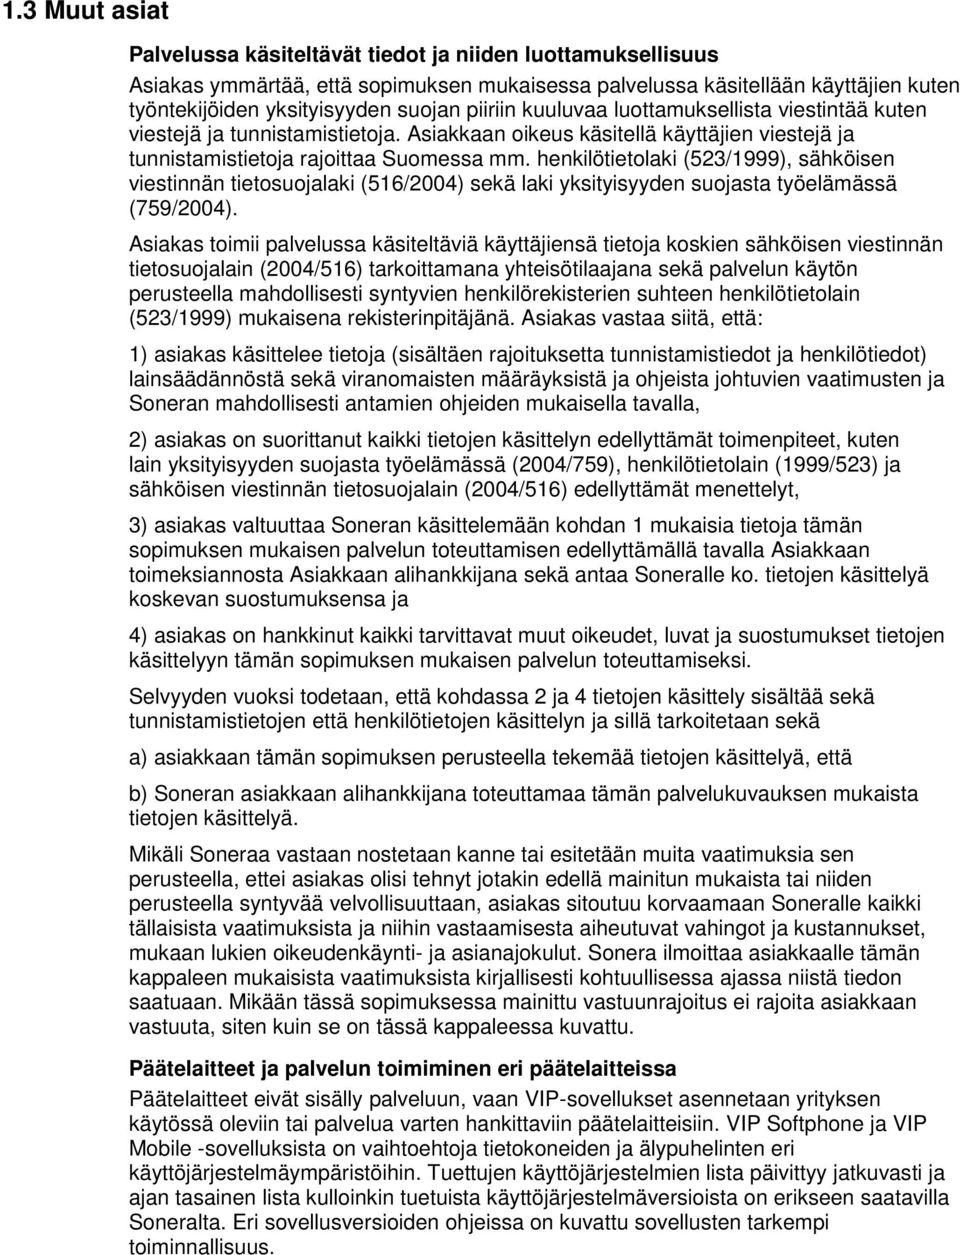 henkilötietolaki (523/1999), sähköisen viestinnän tietosuojalaki (516/2004) sekä laki yksityisyyden suojasta työelämässä (759/2004).